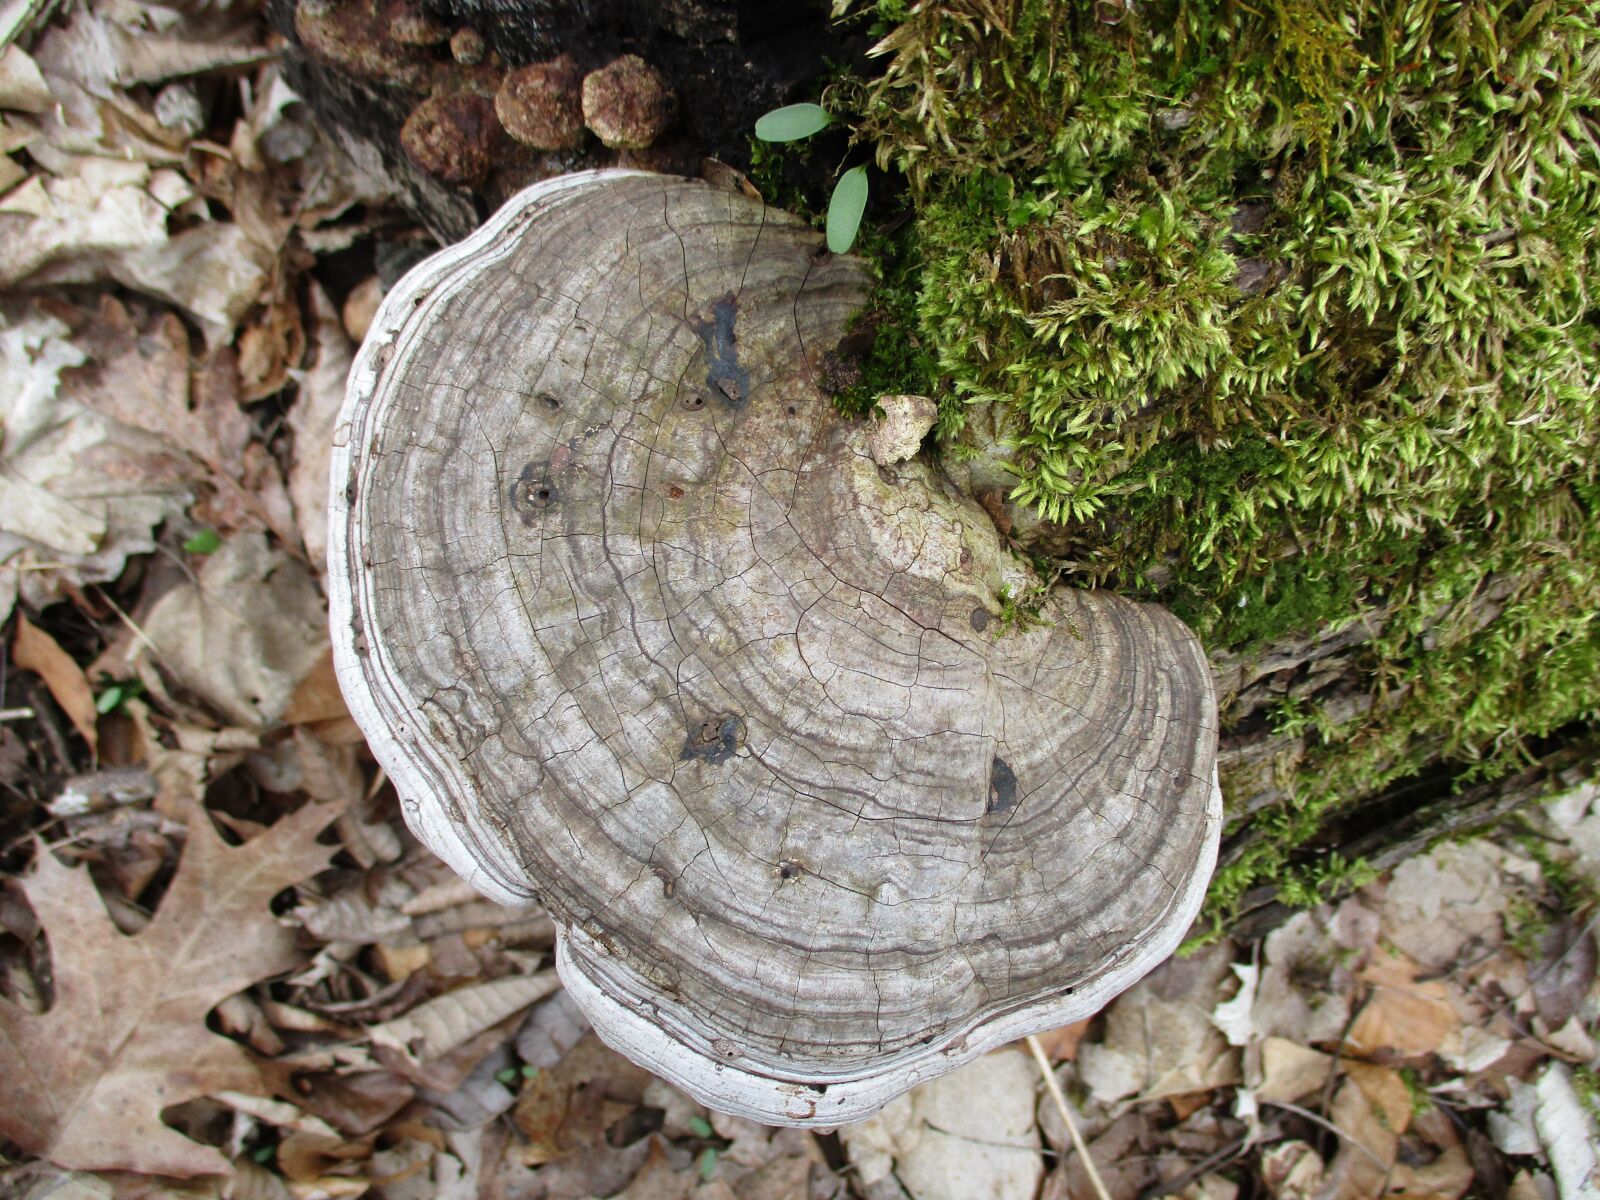 Canon PowerShot ELPH 180 (IXUS 175 / IXY 180) sample photo. Fungi, forest, woods photography